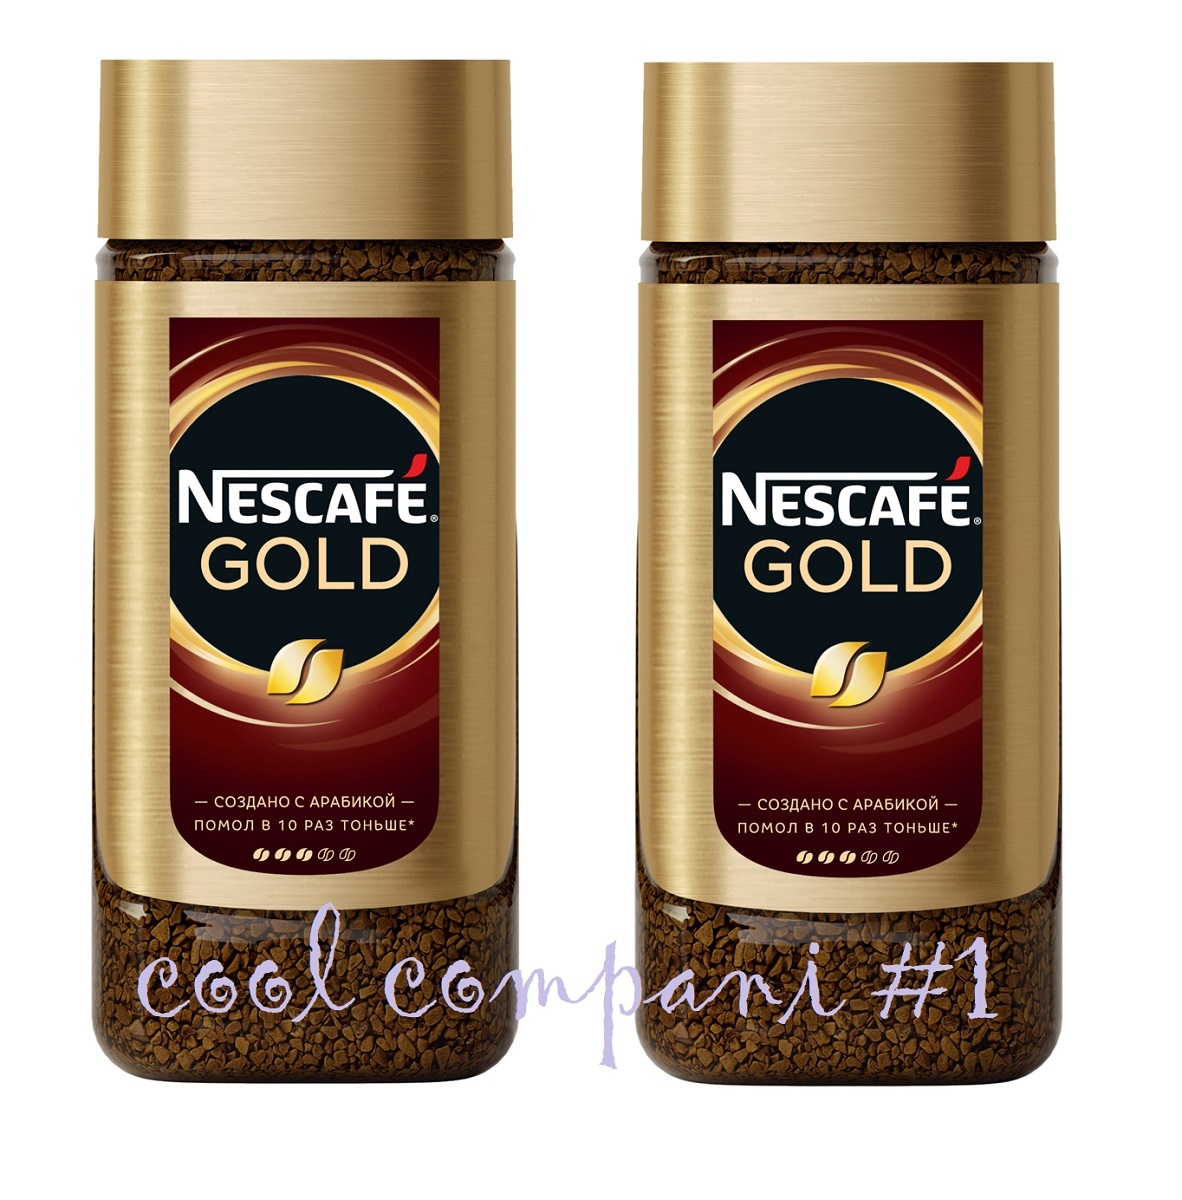 Nescafe gold 190 г. Кофе Нескафе Голд 190г. Нескафе Голд 95г. Кофе Нескафе Голд 95г. Кофе Nescafe Gold молотый растворимый 190 г.